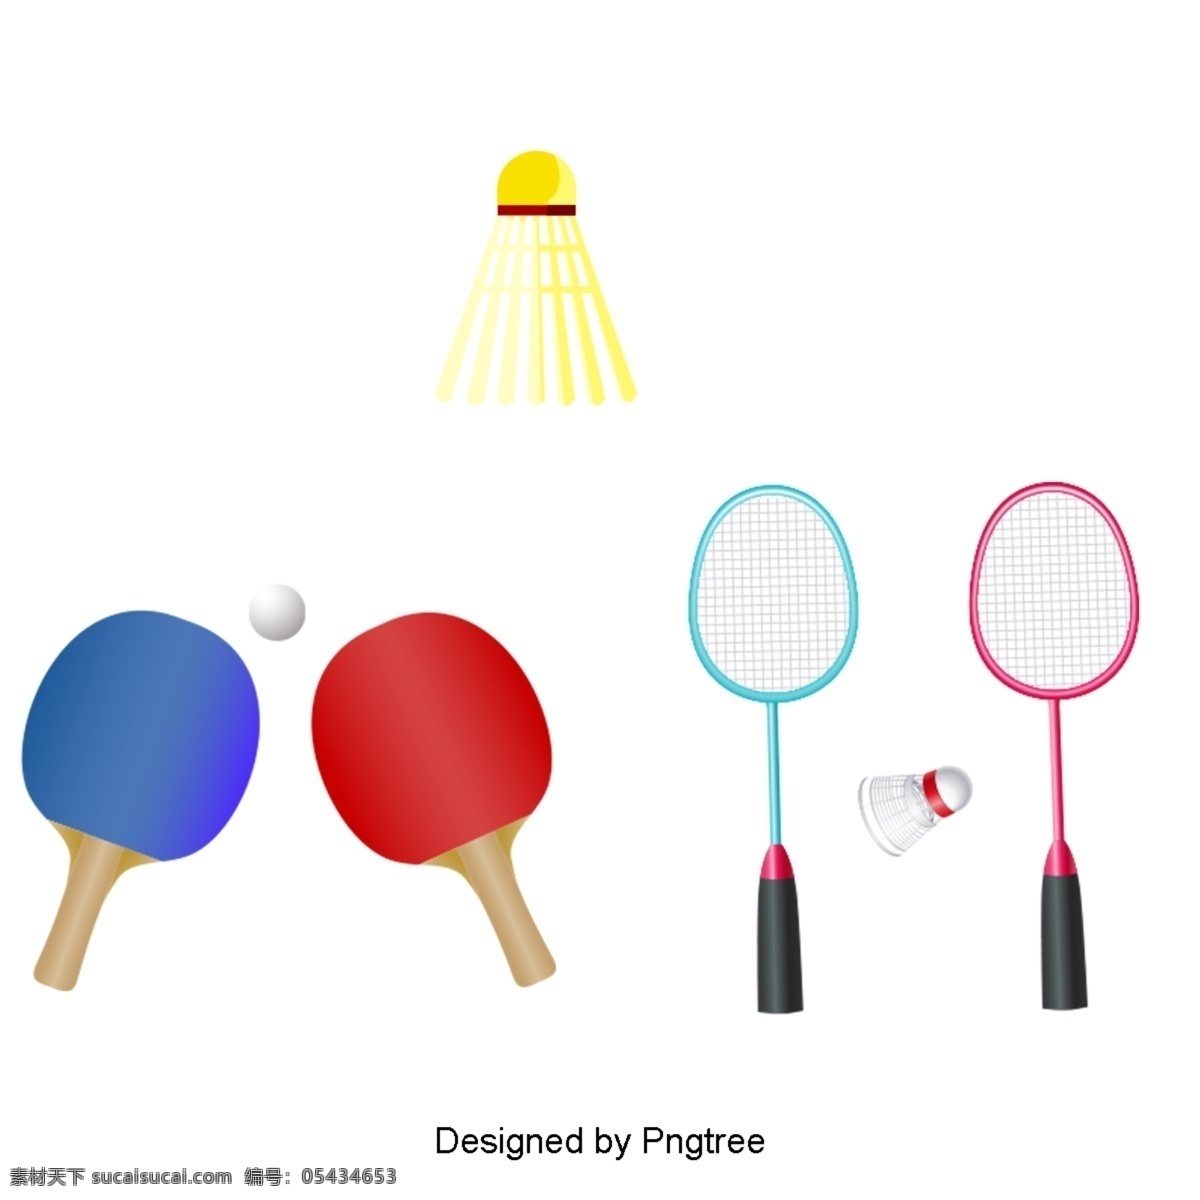 漂亮 的卡 通 手绘 平板 球运动 器材 美学 卡通 平面 球类 游戏 体育器材 羽毛球 乒乓球 桌子